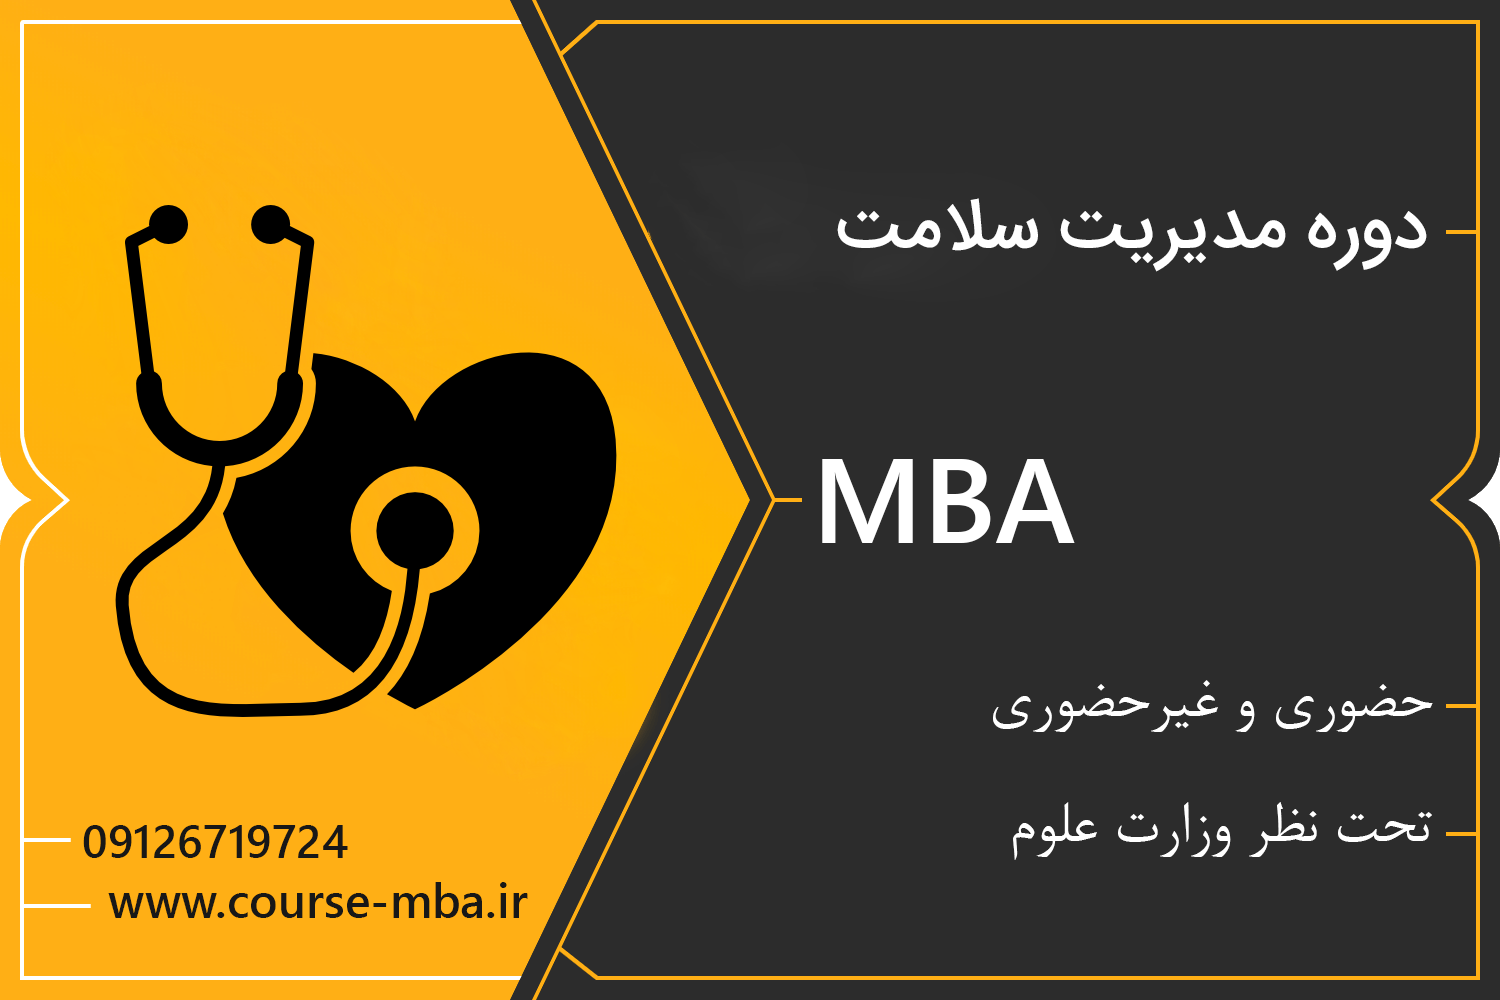 دوره مدیریت سلامت | دوره MBA مدیریت سلامت